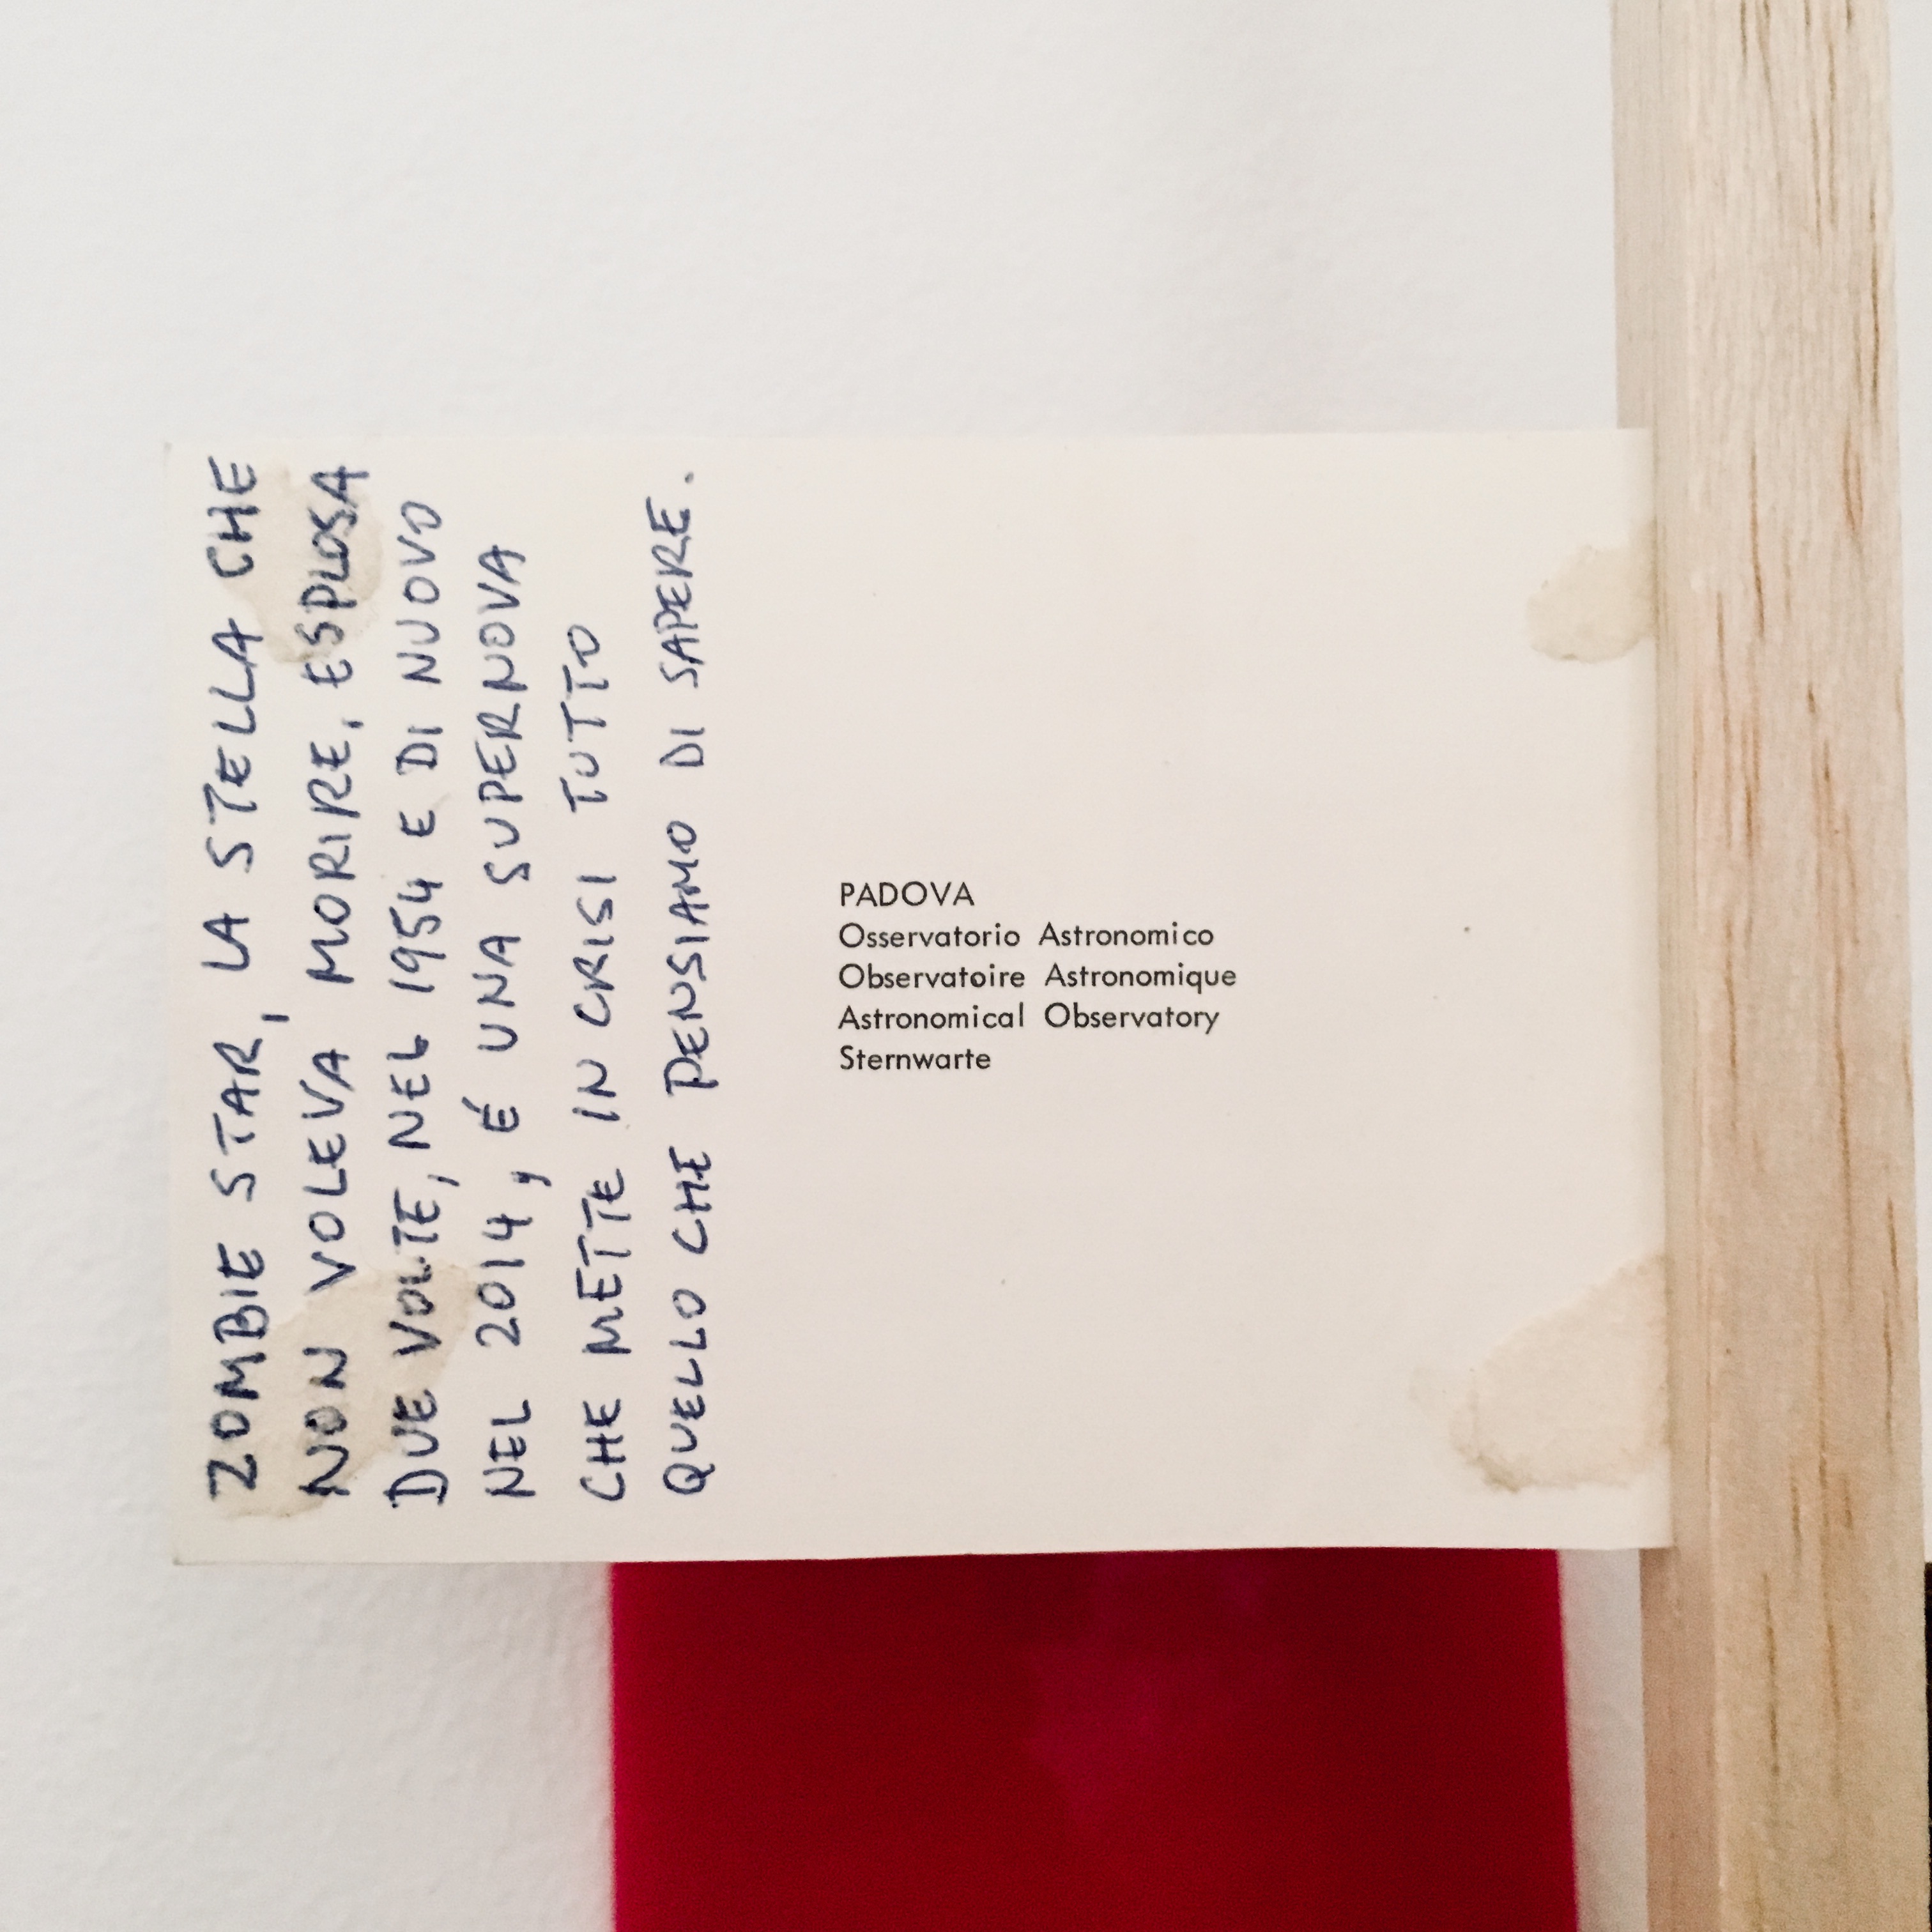 Gê Orthof, Máquinas mínimas, Padova Ho Chi Minh, acrílico, postais, balsa e bic, desenho assemblage, 63 x 21 x 6 cm, 2018 detalhe